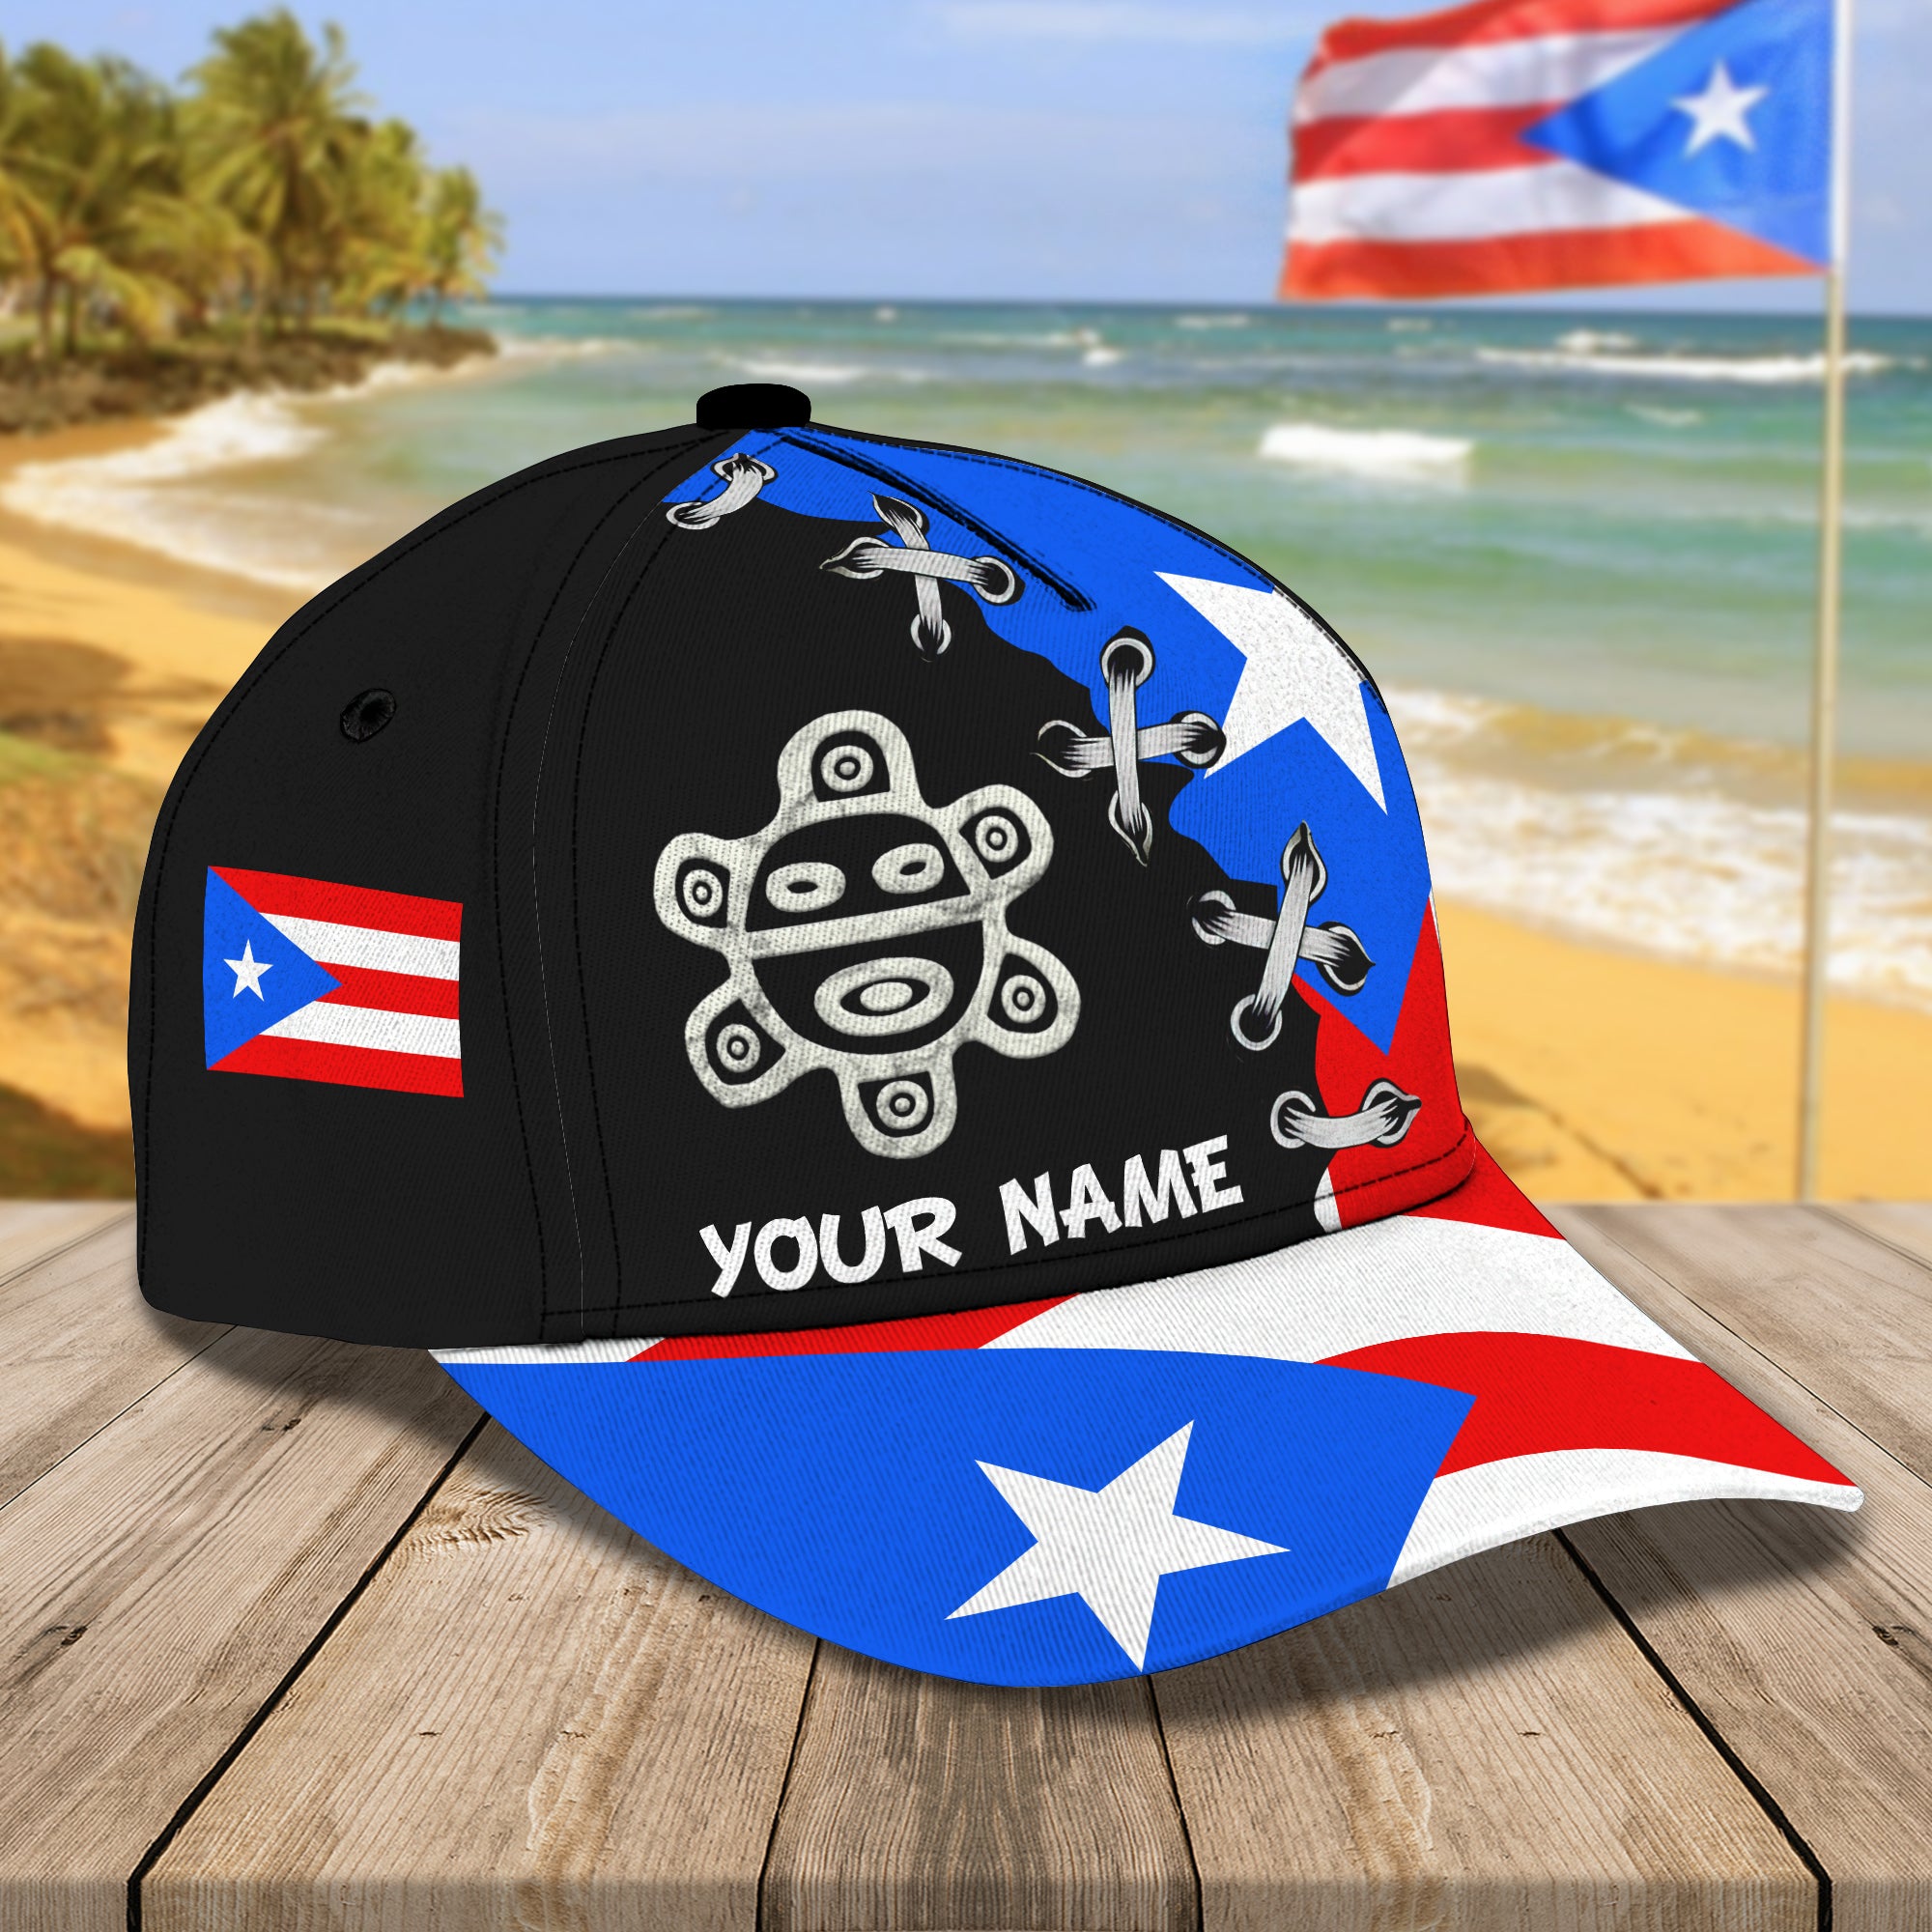 Puerto Rico - Personalized Name Cap - Urt96